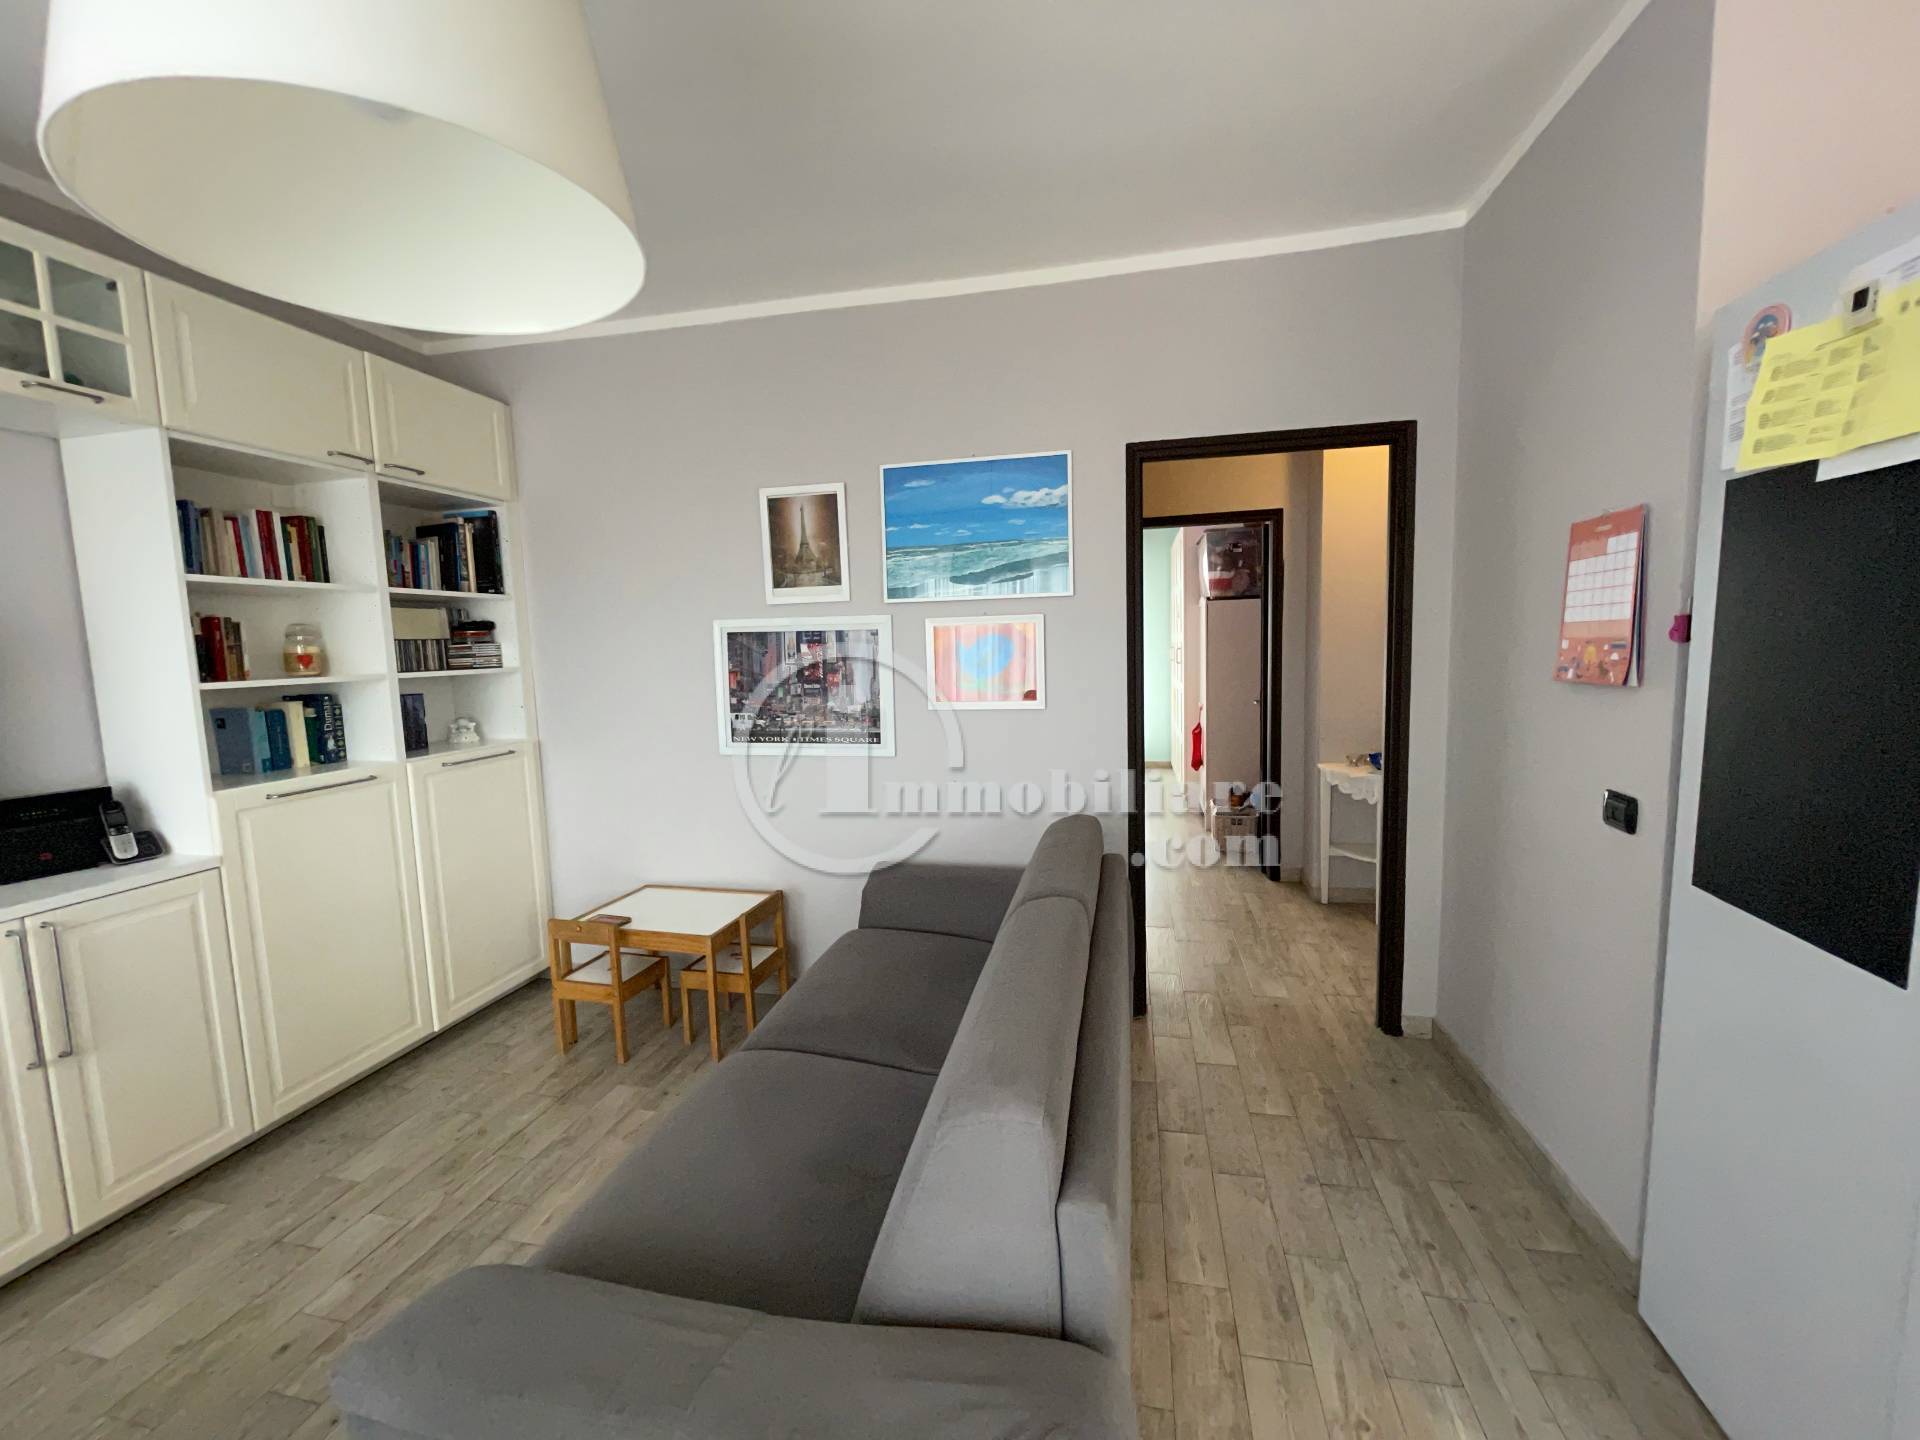 Appartamento in vendita a Busto Arsizio, 3 locali, zona dale, prezzo € 130.000 | PortaleAgenzieImmobiliari.it